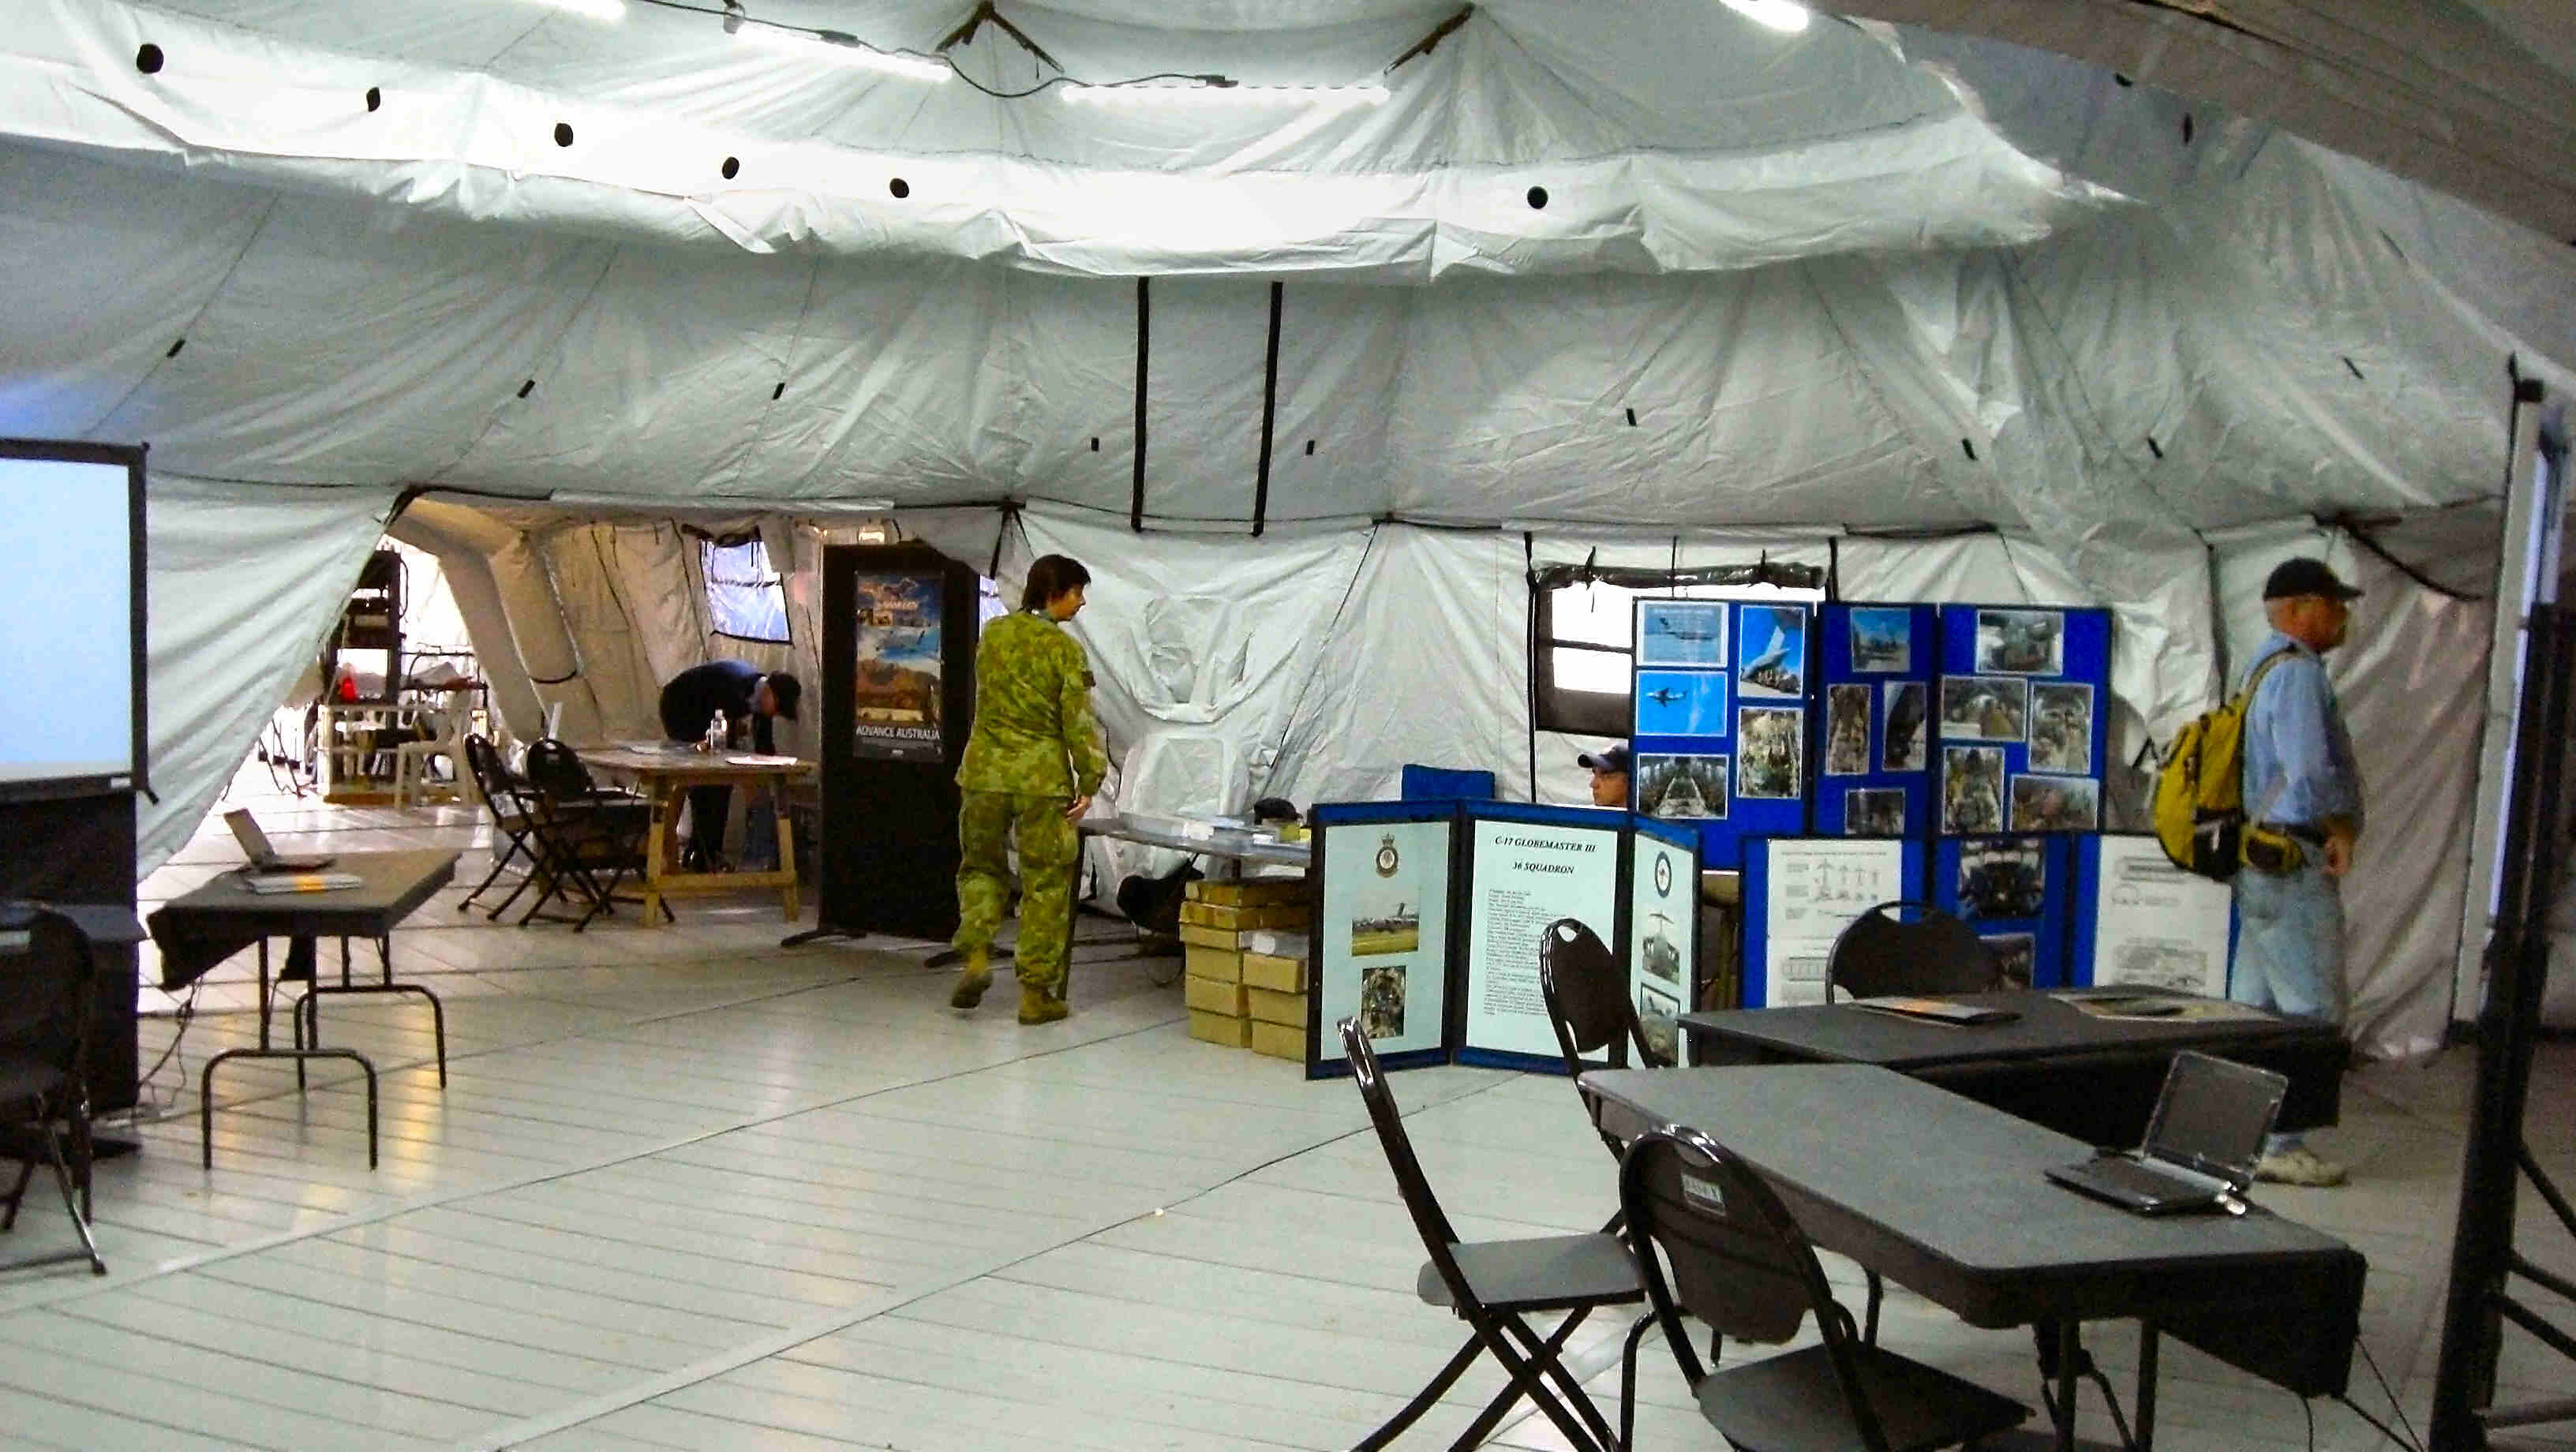 Inside RAAF Tent